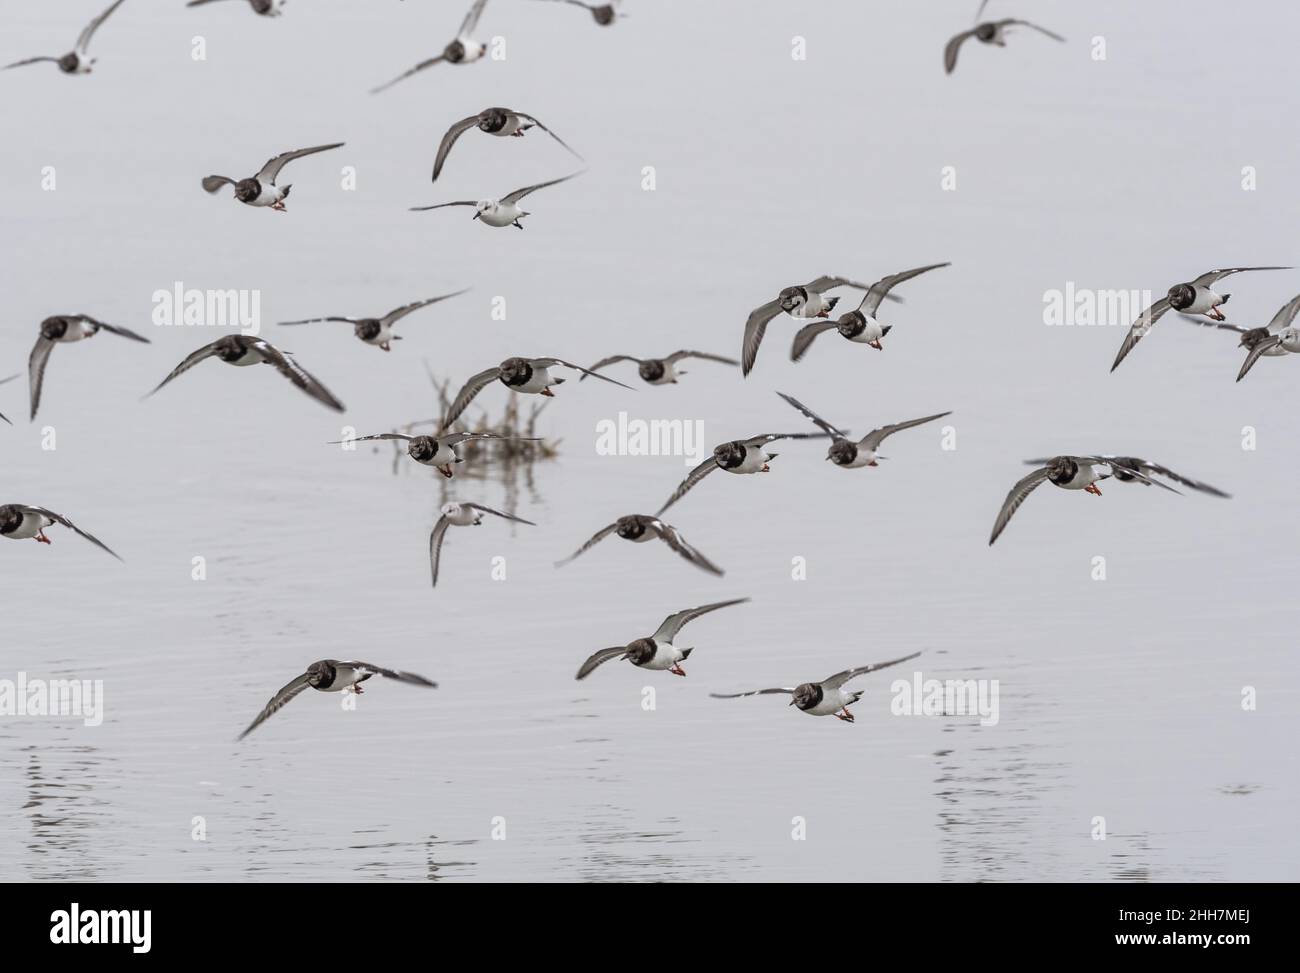 Flying flock of Turnstones (Arenaria interpres) Stock Photo